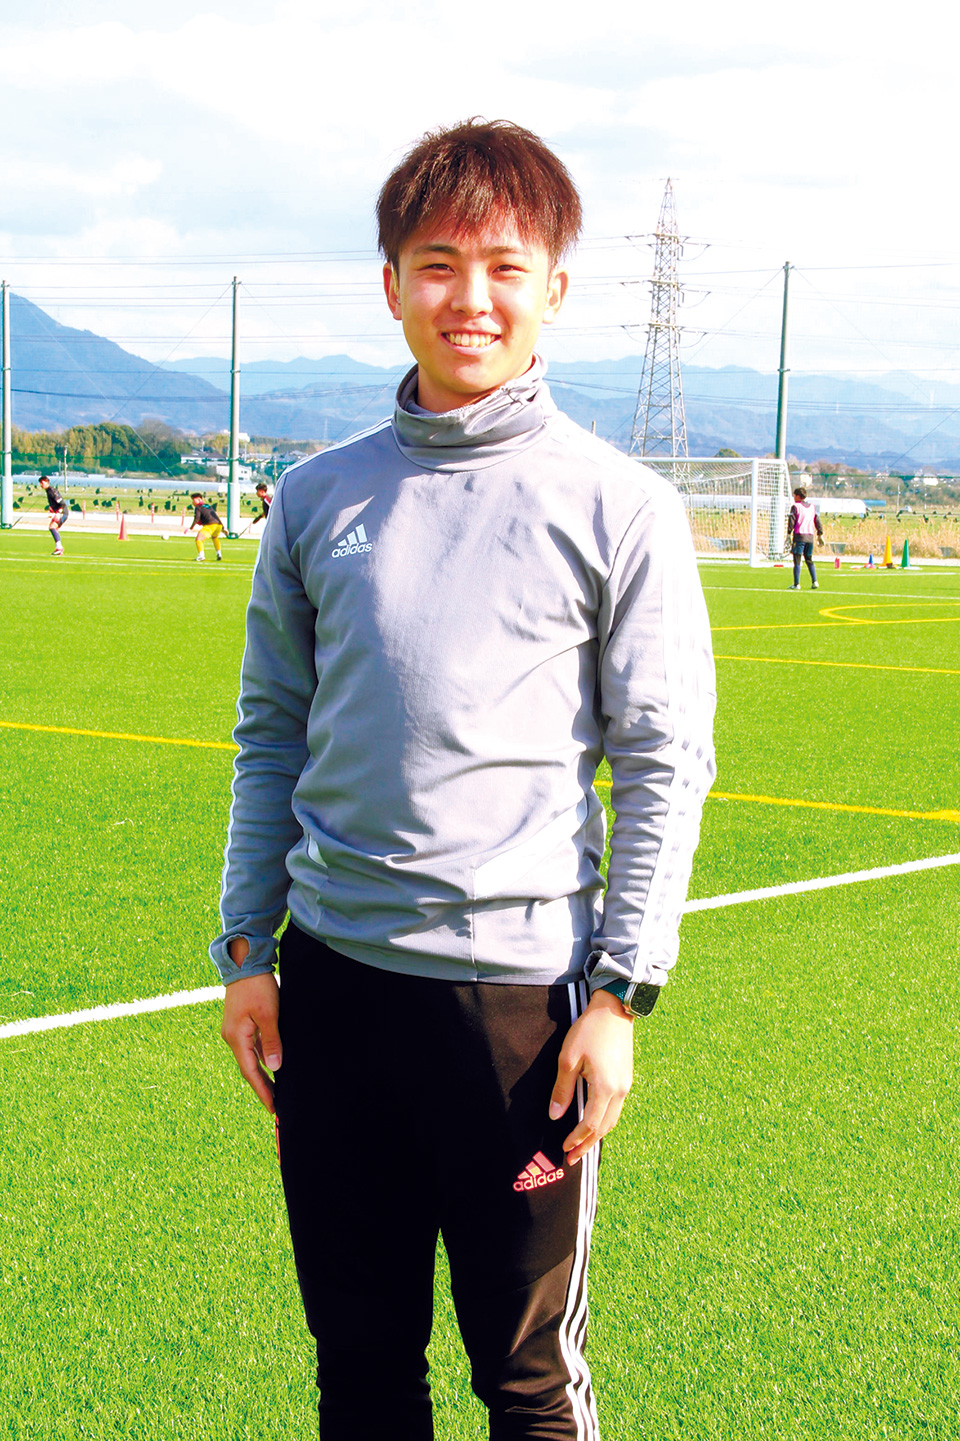 湯野 琉世さん 1999年、八代市生まれ。小学1年から兄の影響でサッカーを始め、高校時代は副キャプテンも務める。卒業後、就職して社会人チームでサッカーをしていた時、デフサッカーを知り、2018年から転向。23年のW杯に日本代表として出場し、中心選手として準優勝に貢献。ポジションはボランチ。